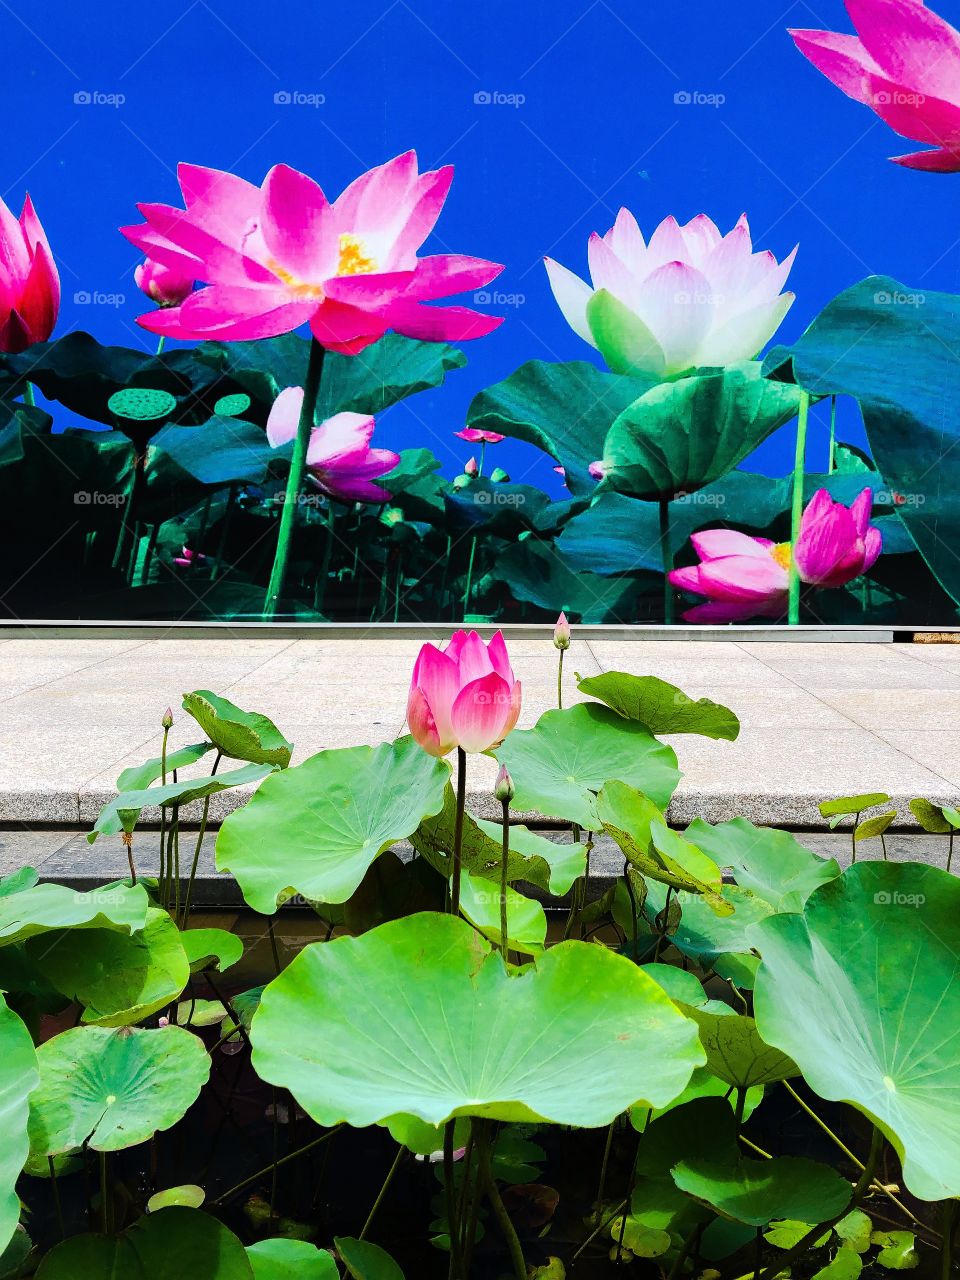 Lotus flower growing against a mural of lotus flowers 